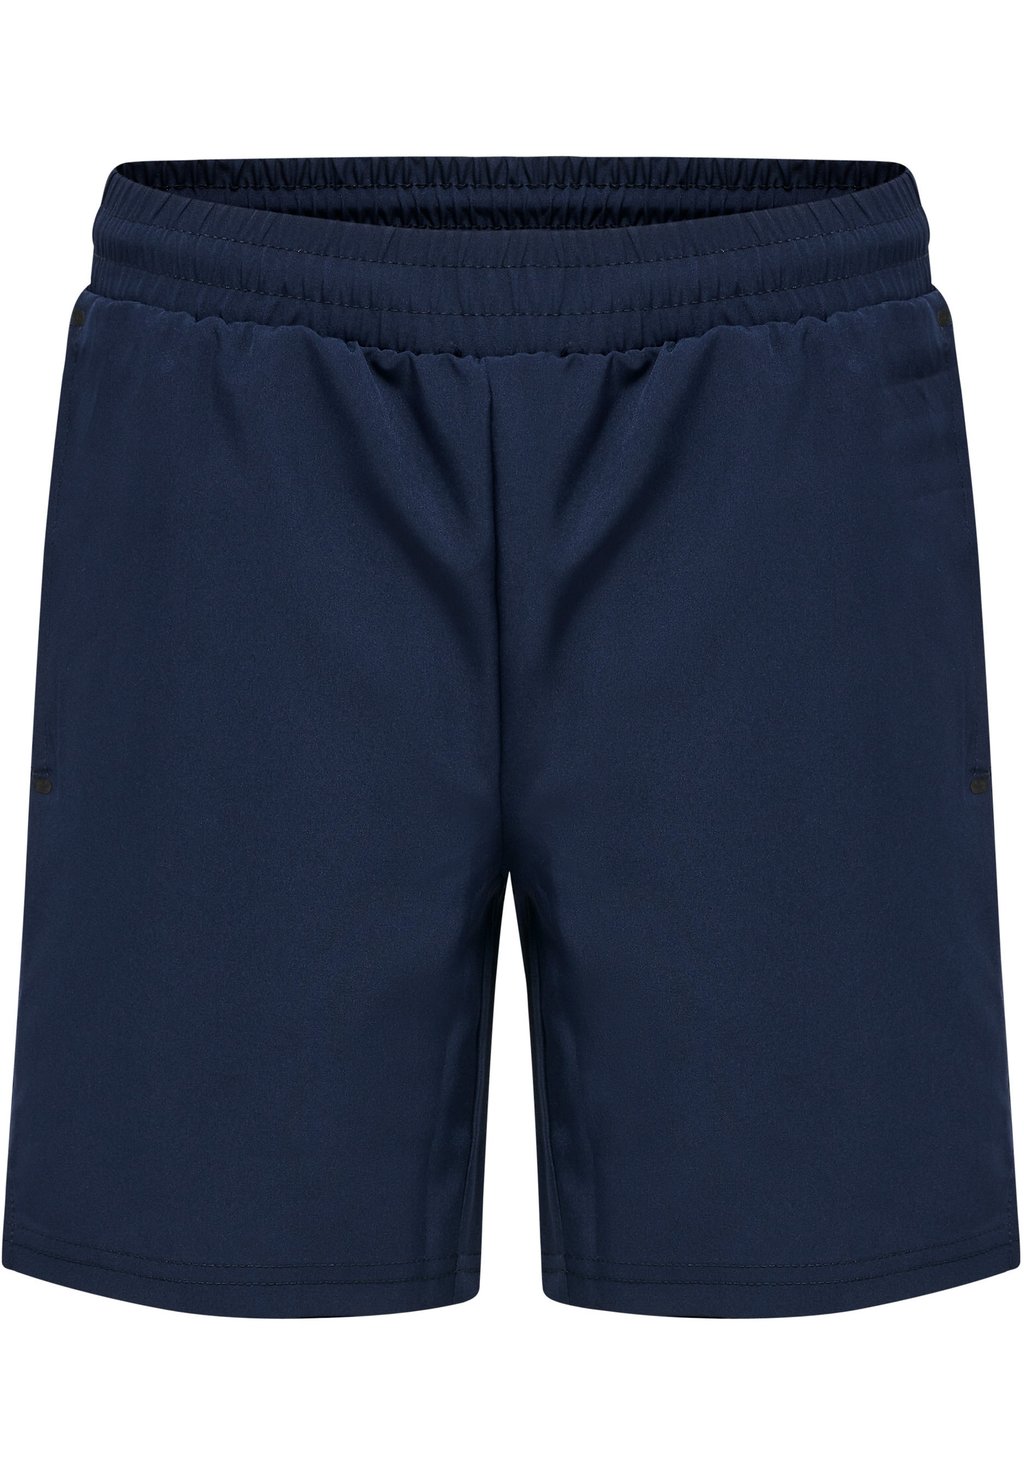 короткие спортивные штаны hummel цвет marine Короткие спортивные брюки HMLMOVE GRID Hummel, цвет marine